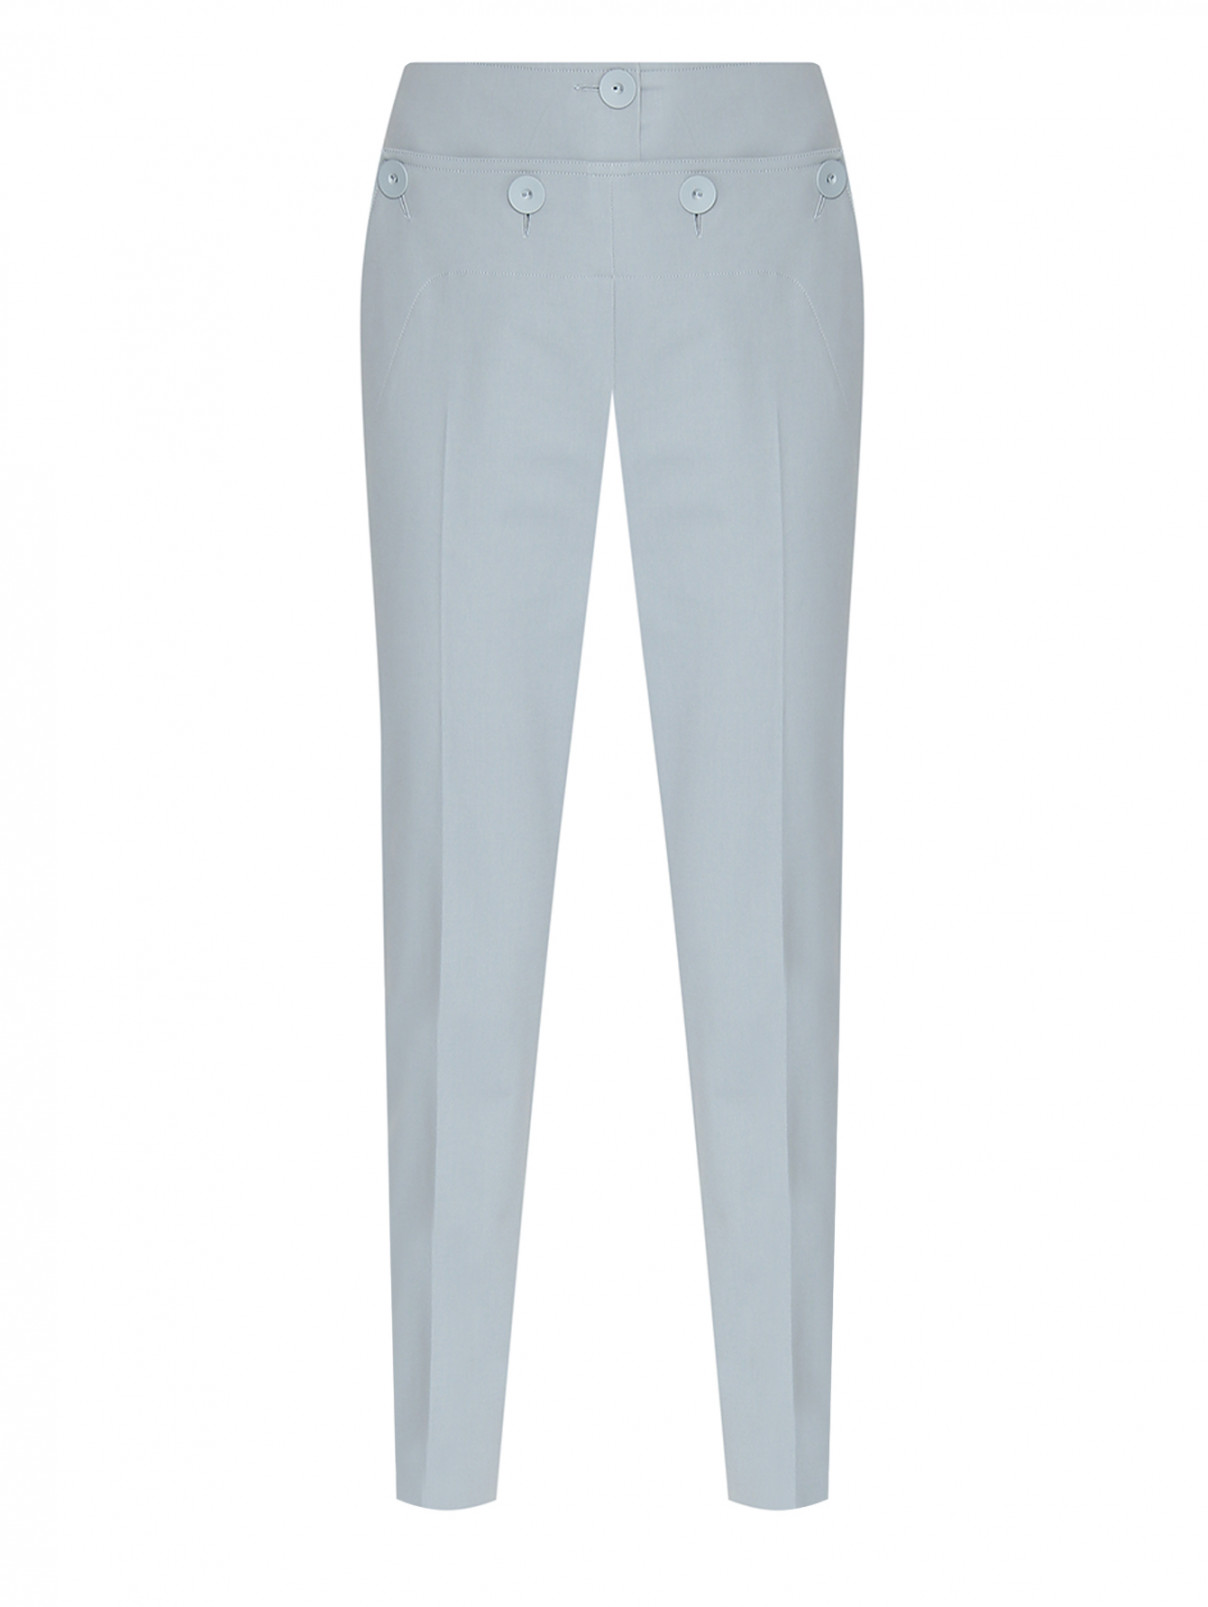 Зауженные брюки из хлопка Max Mara  –  Общий вид  – Цвет:  Синий